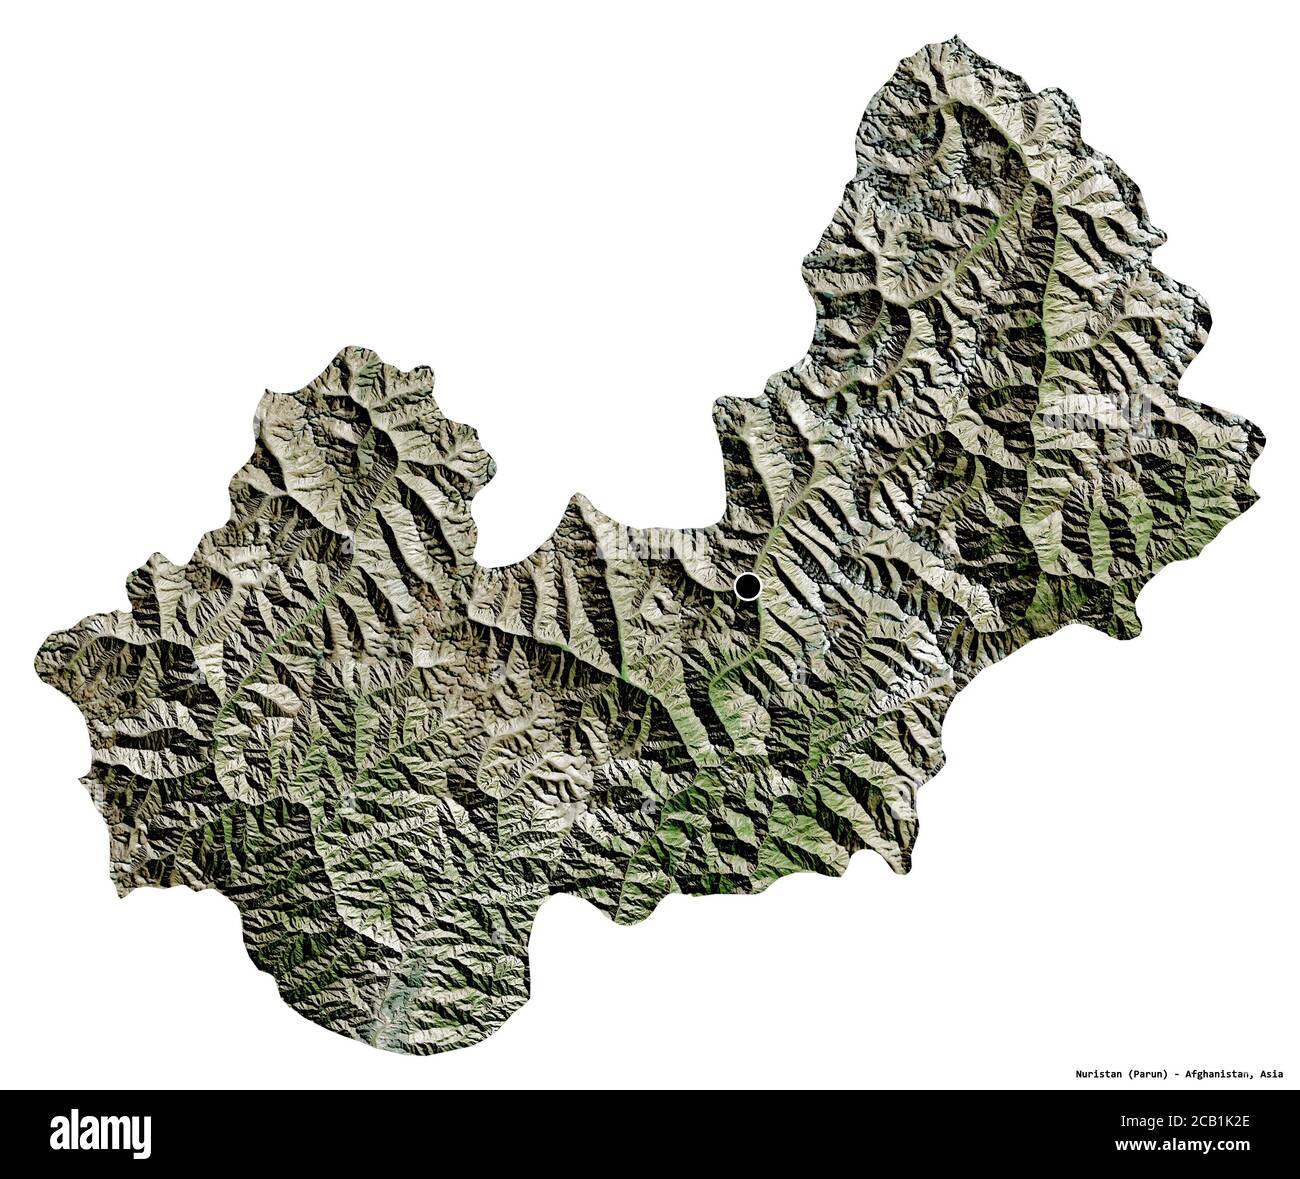 Forma del Nuristan, provincia dell'Afghanistan, con la sua capitale isolata su sfondo bianco. Immagini satellitari. Rendering 3D Foto Stock